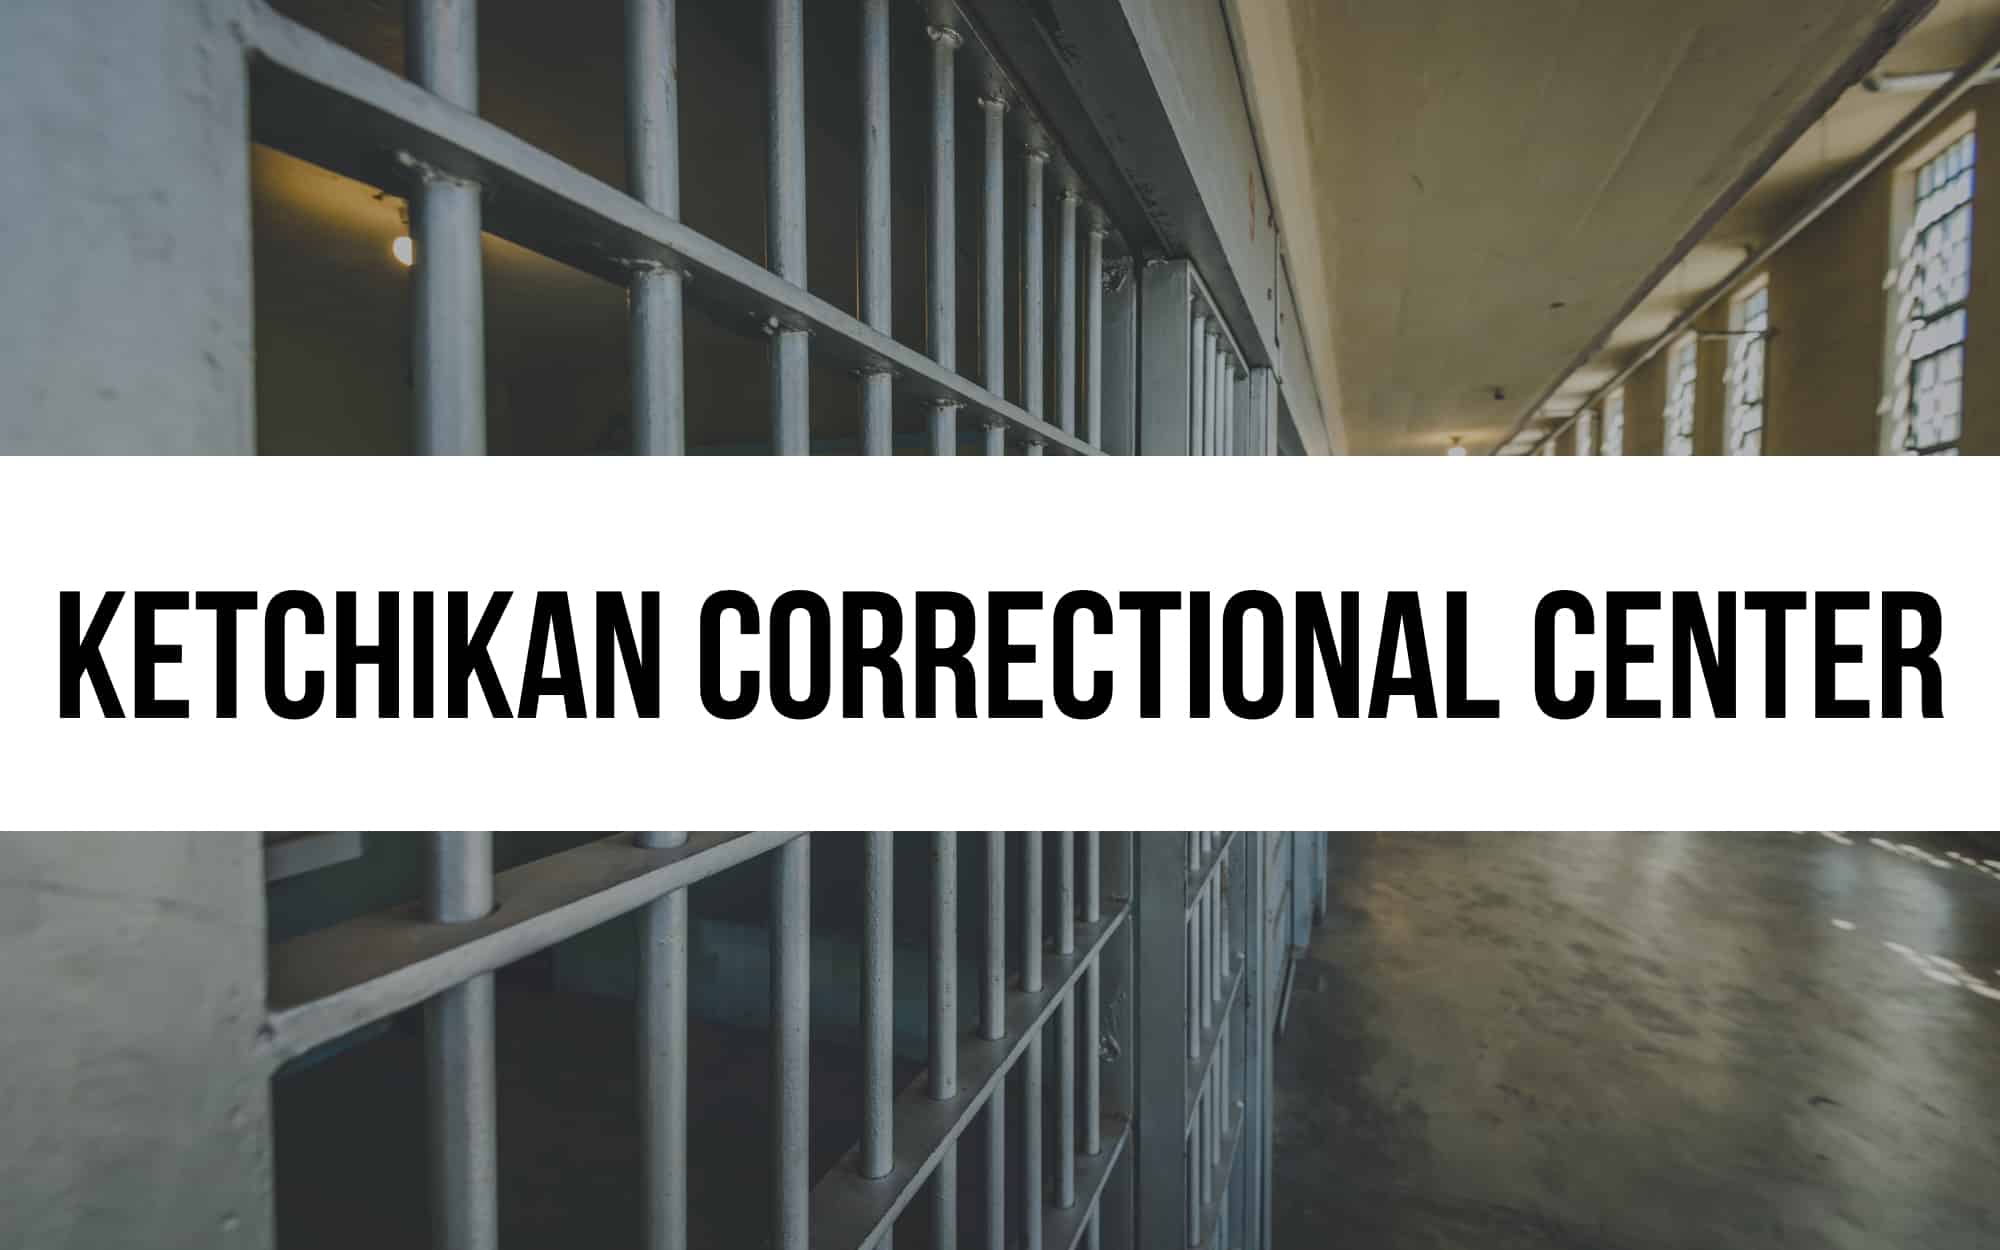 Ketchikan Correctional Center